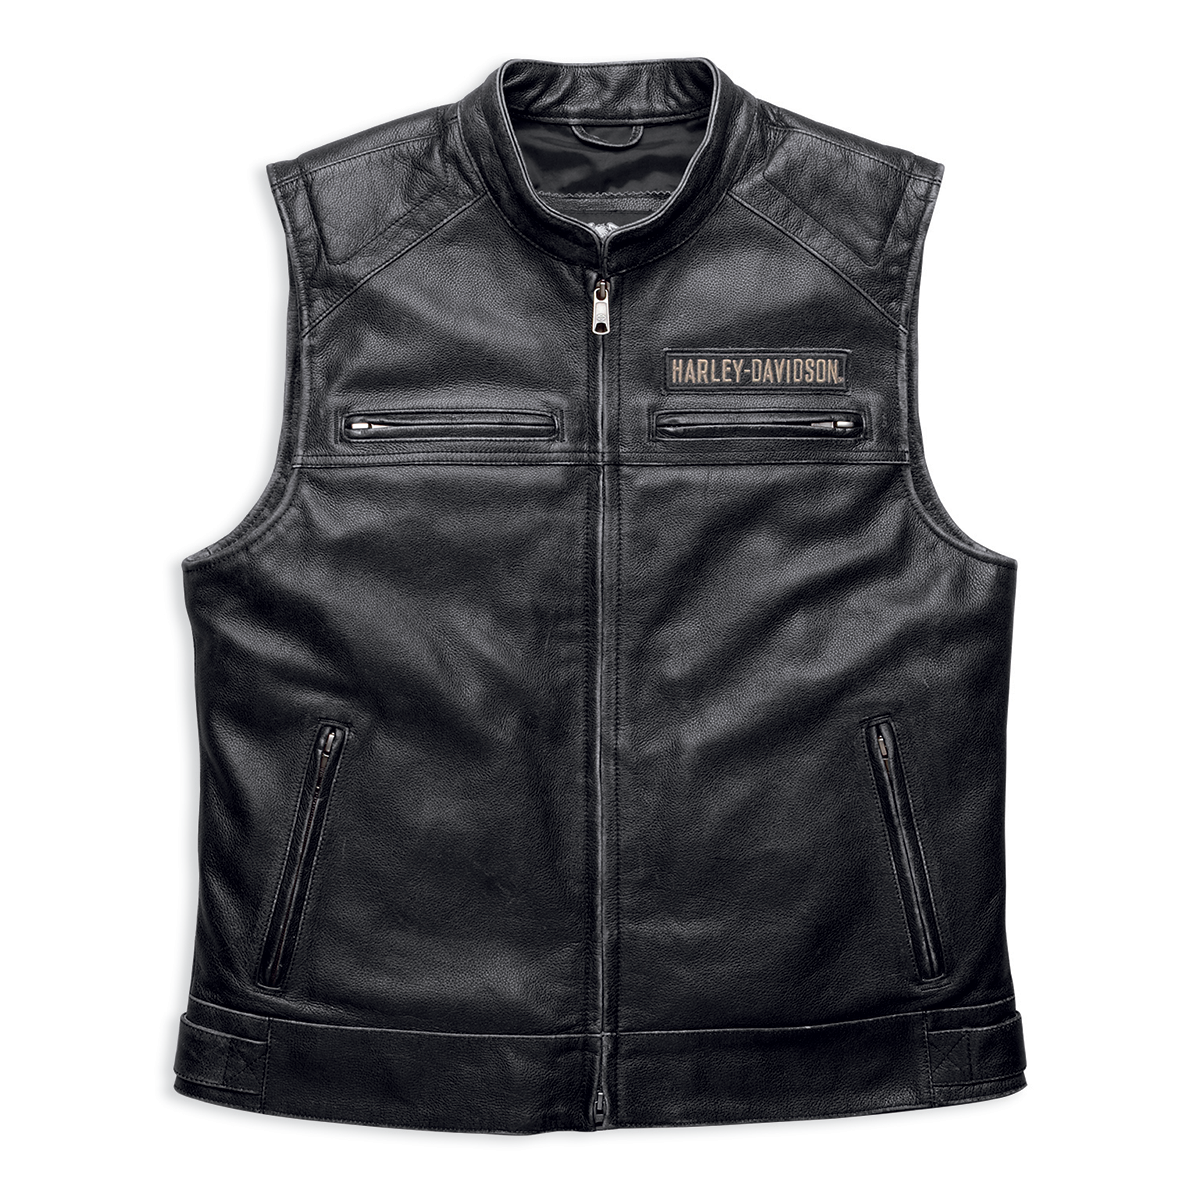 Harley-Davidson Passing Link Men's Leather Vest